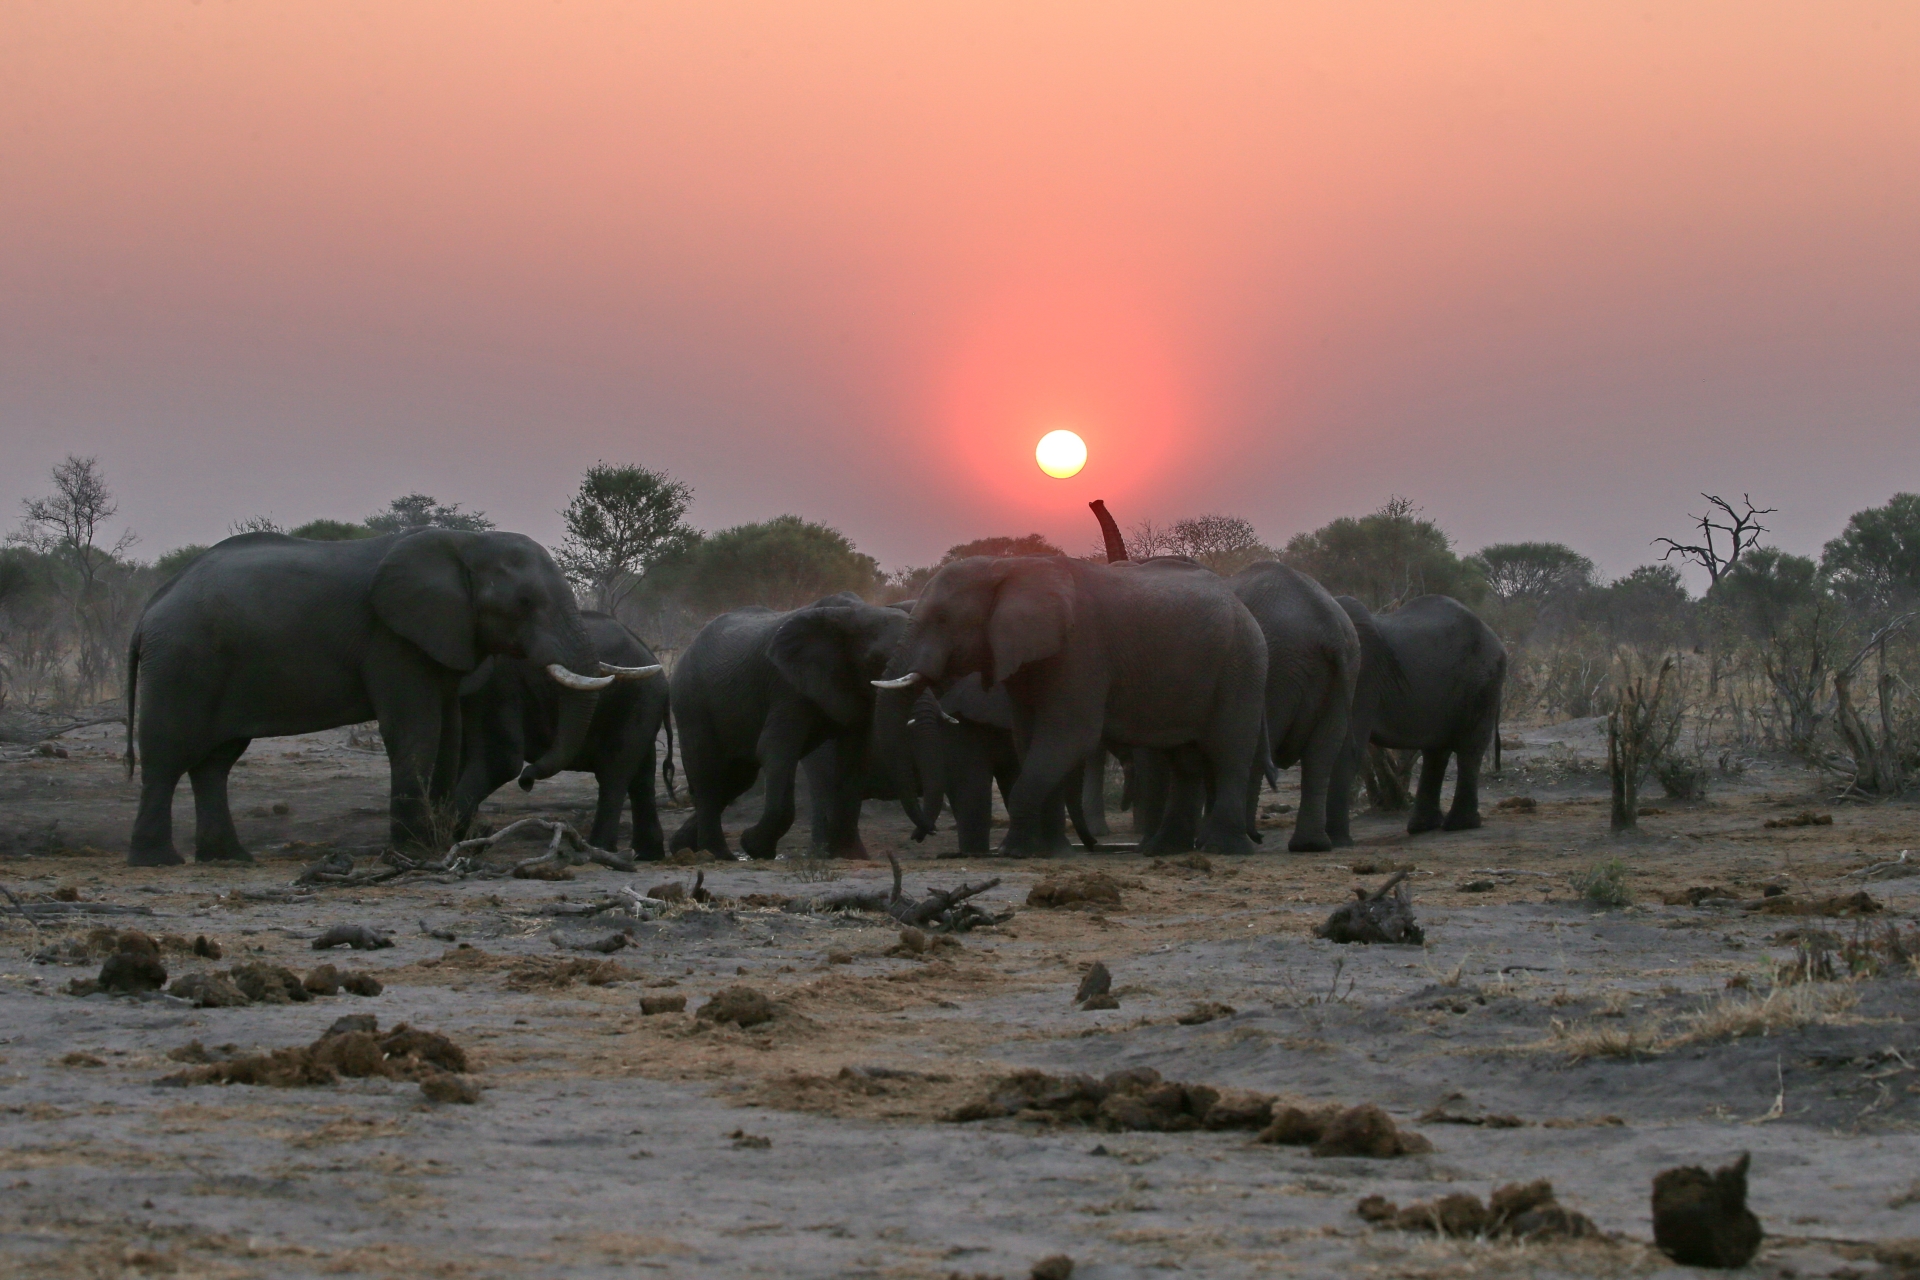 Elephants and sunset - Sky Beds